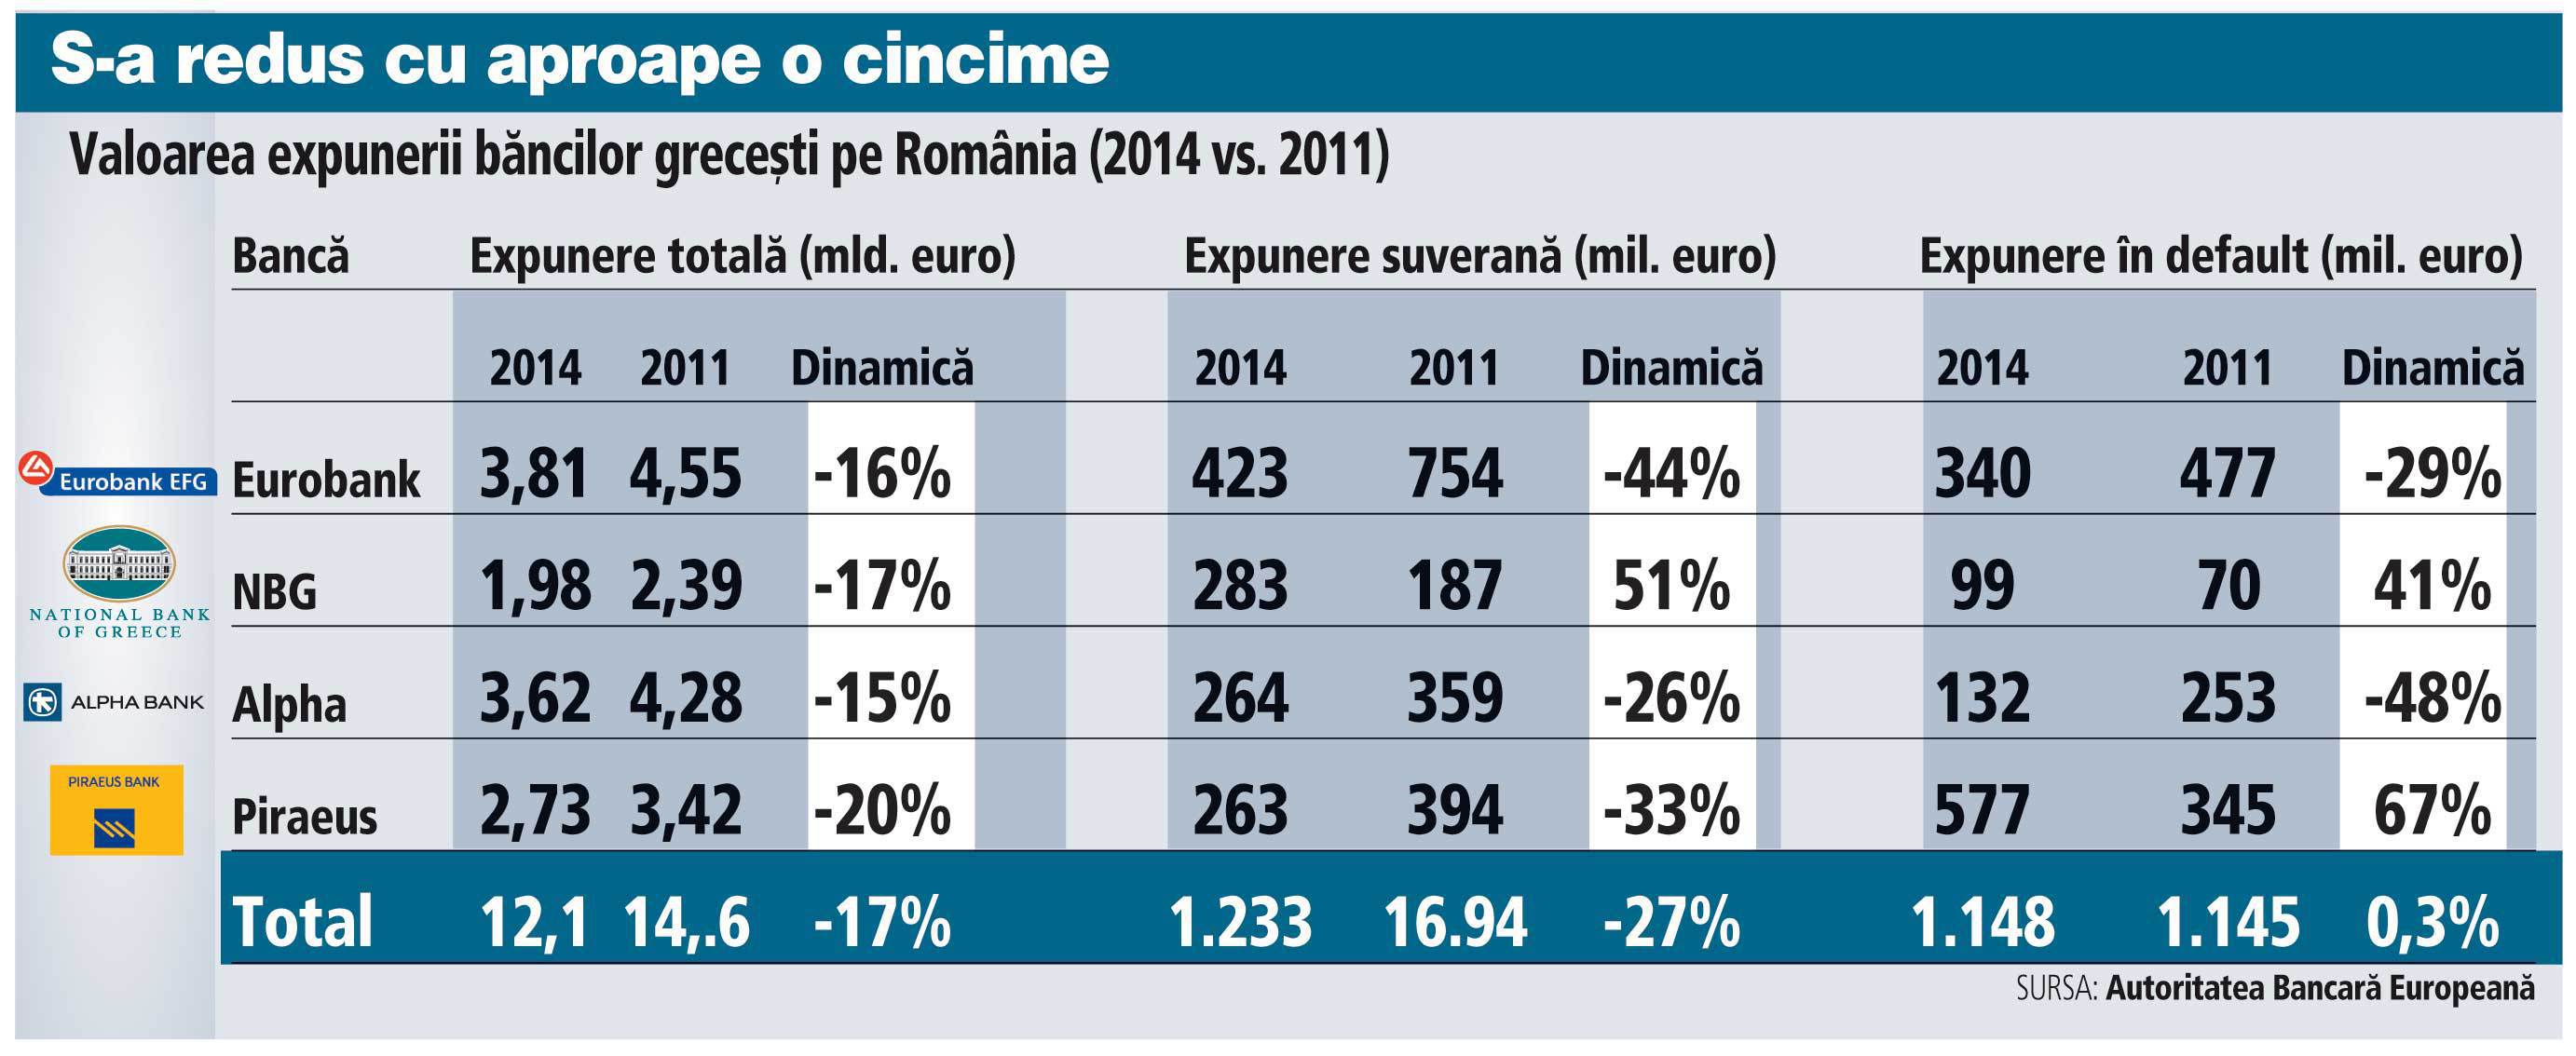 Valoarea expunerii băncilor greceşti pe România (2011 faţă de 2014)